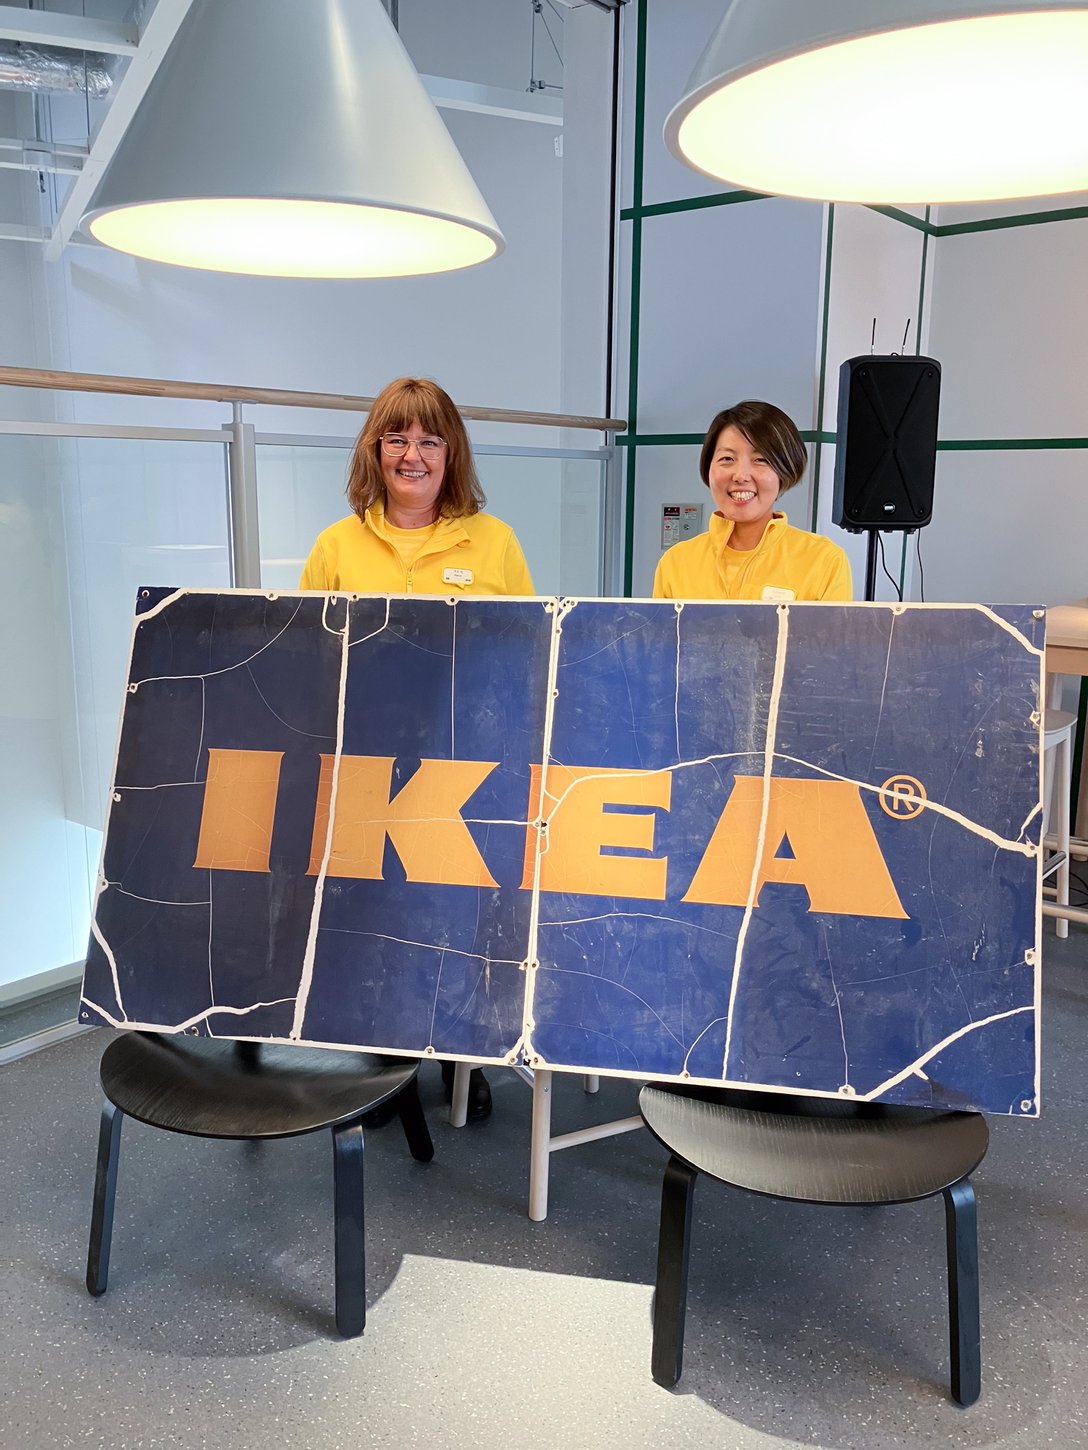 IKEAの看板と2人の女性